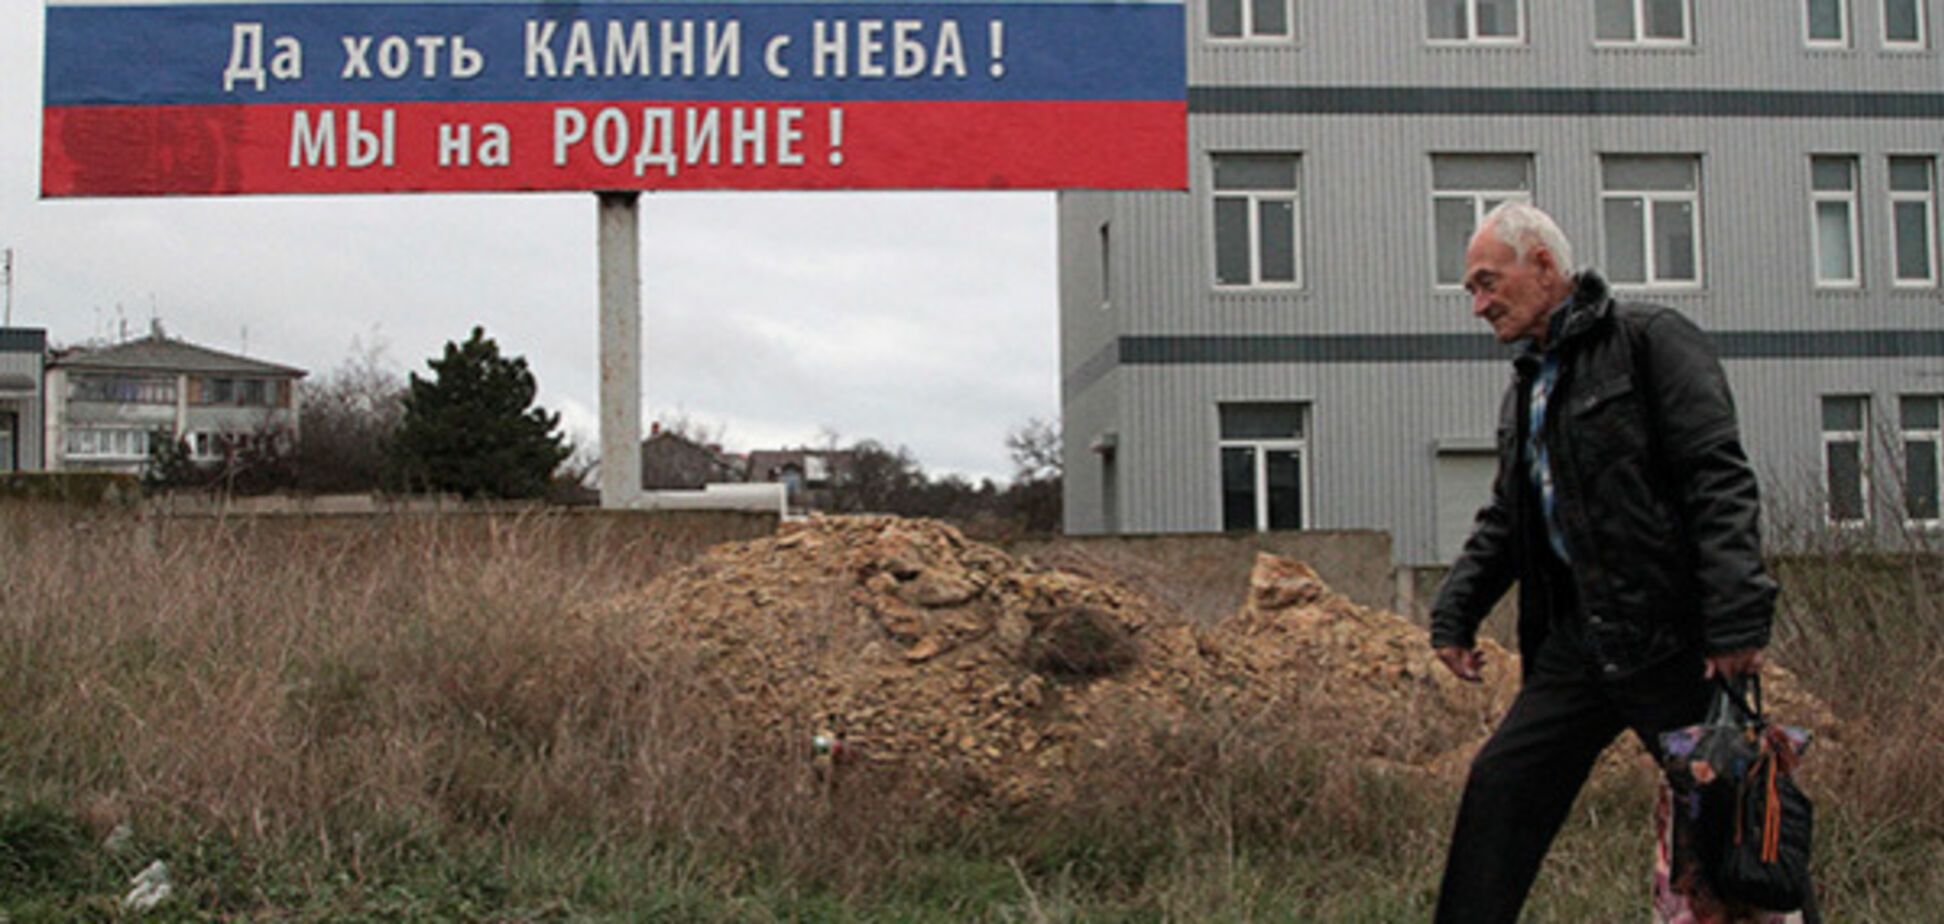 'С работой грустно': обнародованы данные о зарплатах в аннексированном Крыму